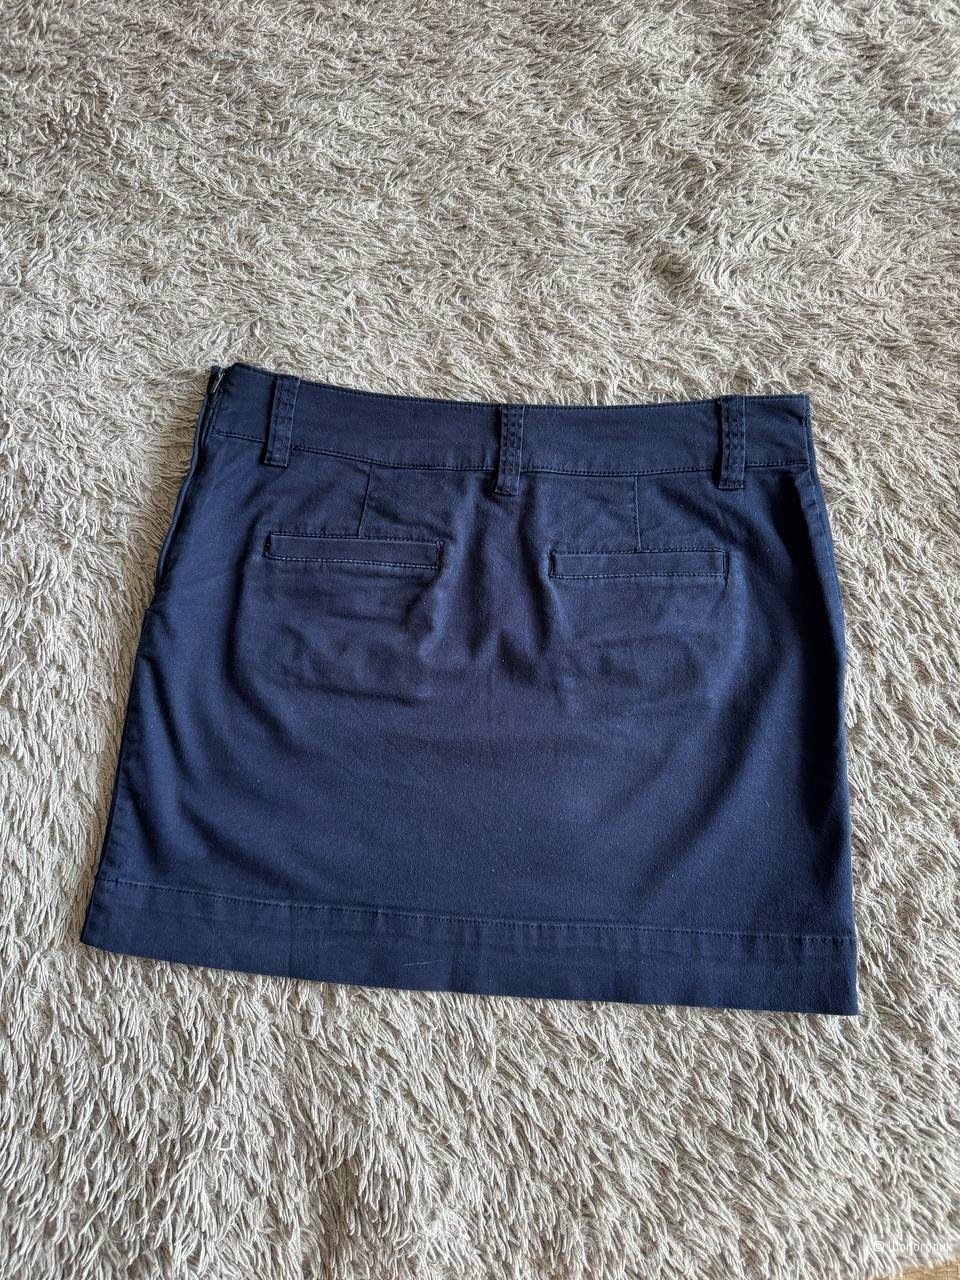 Хлопковая юбка мини темно-синего цвета, H&M, 46-48 р